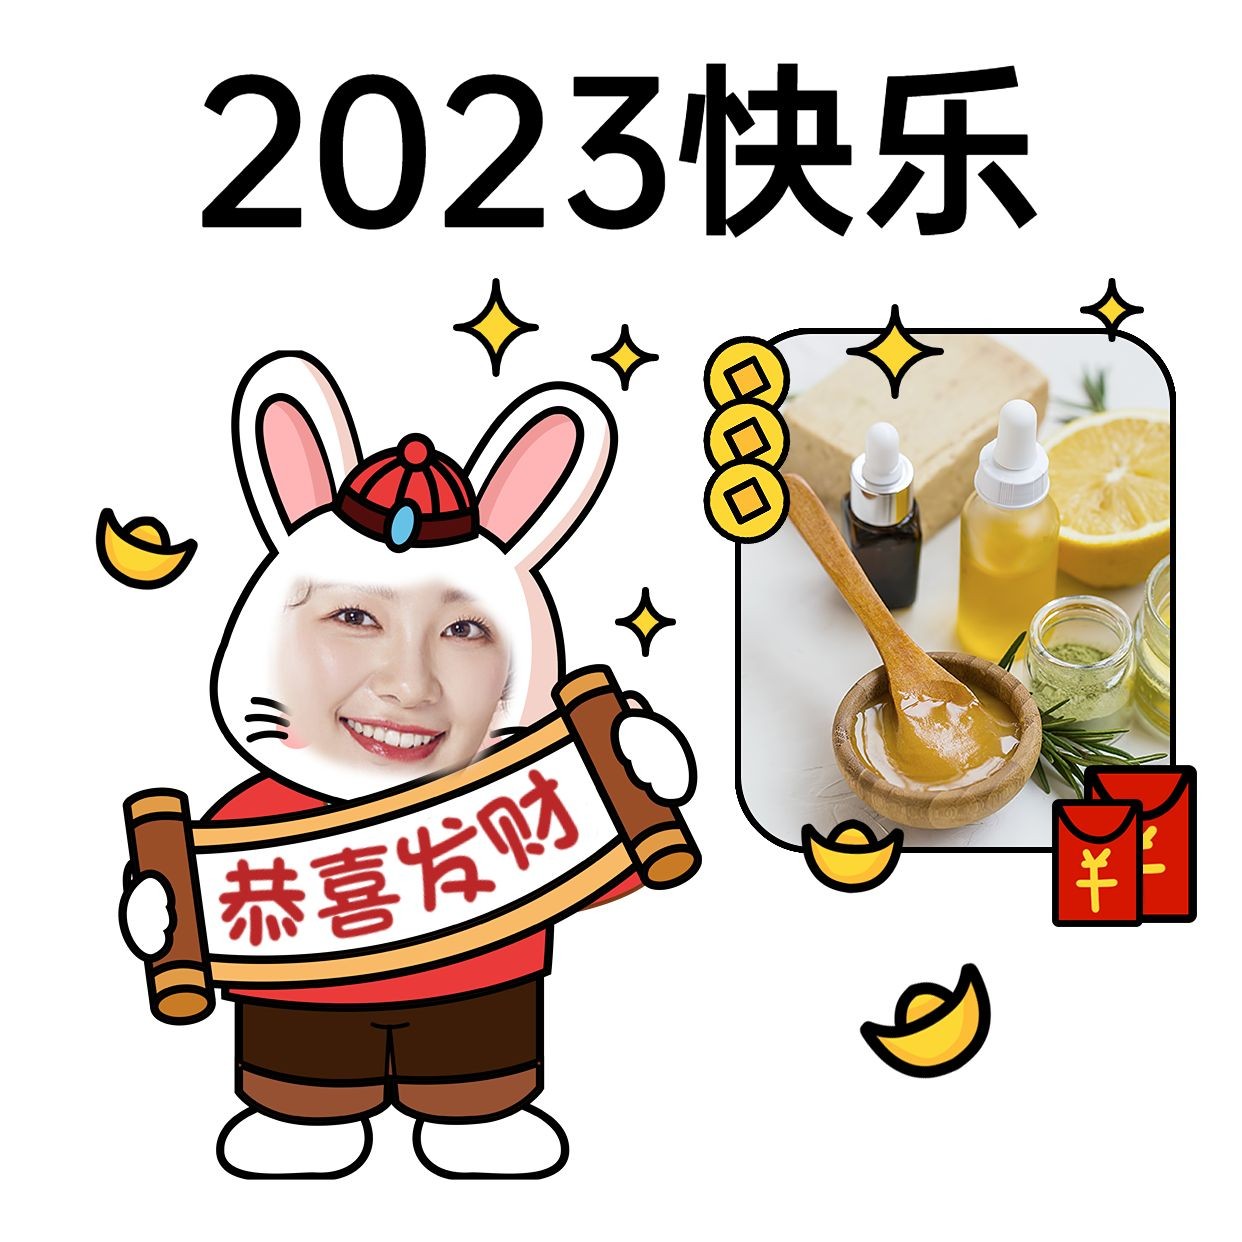 2020鼠年最新除夕祝福语大全 2020最新除夕问候语图片表情汇总_见多识广_海峡网